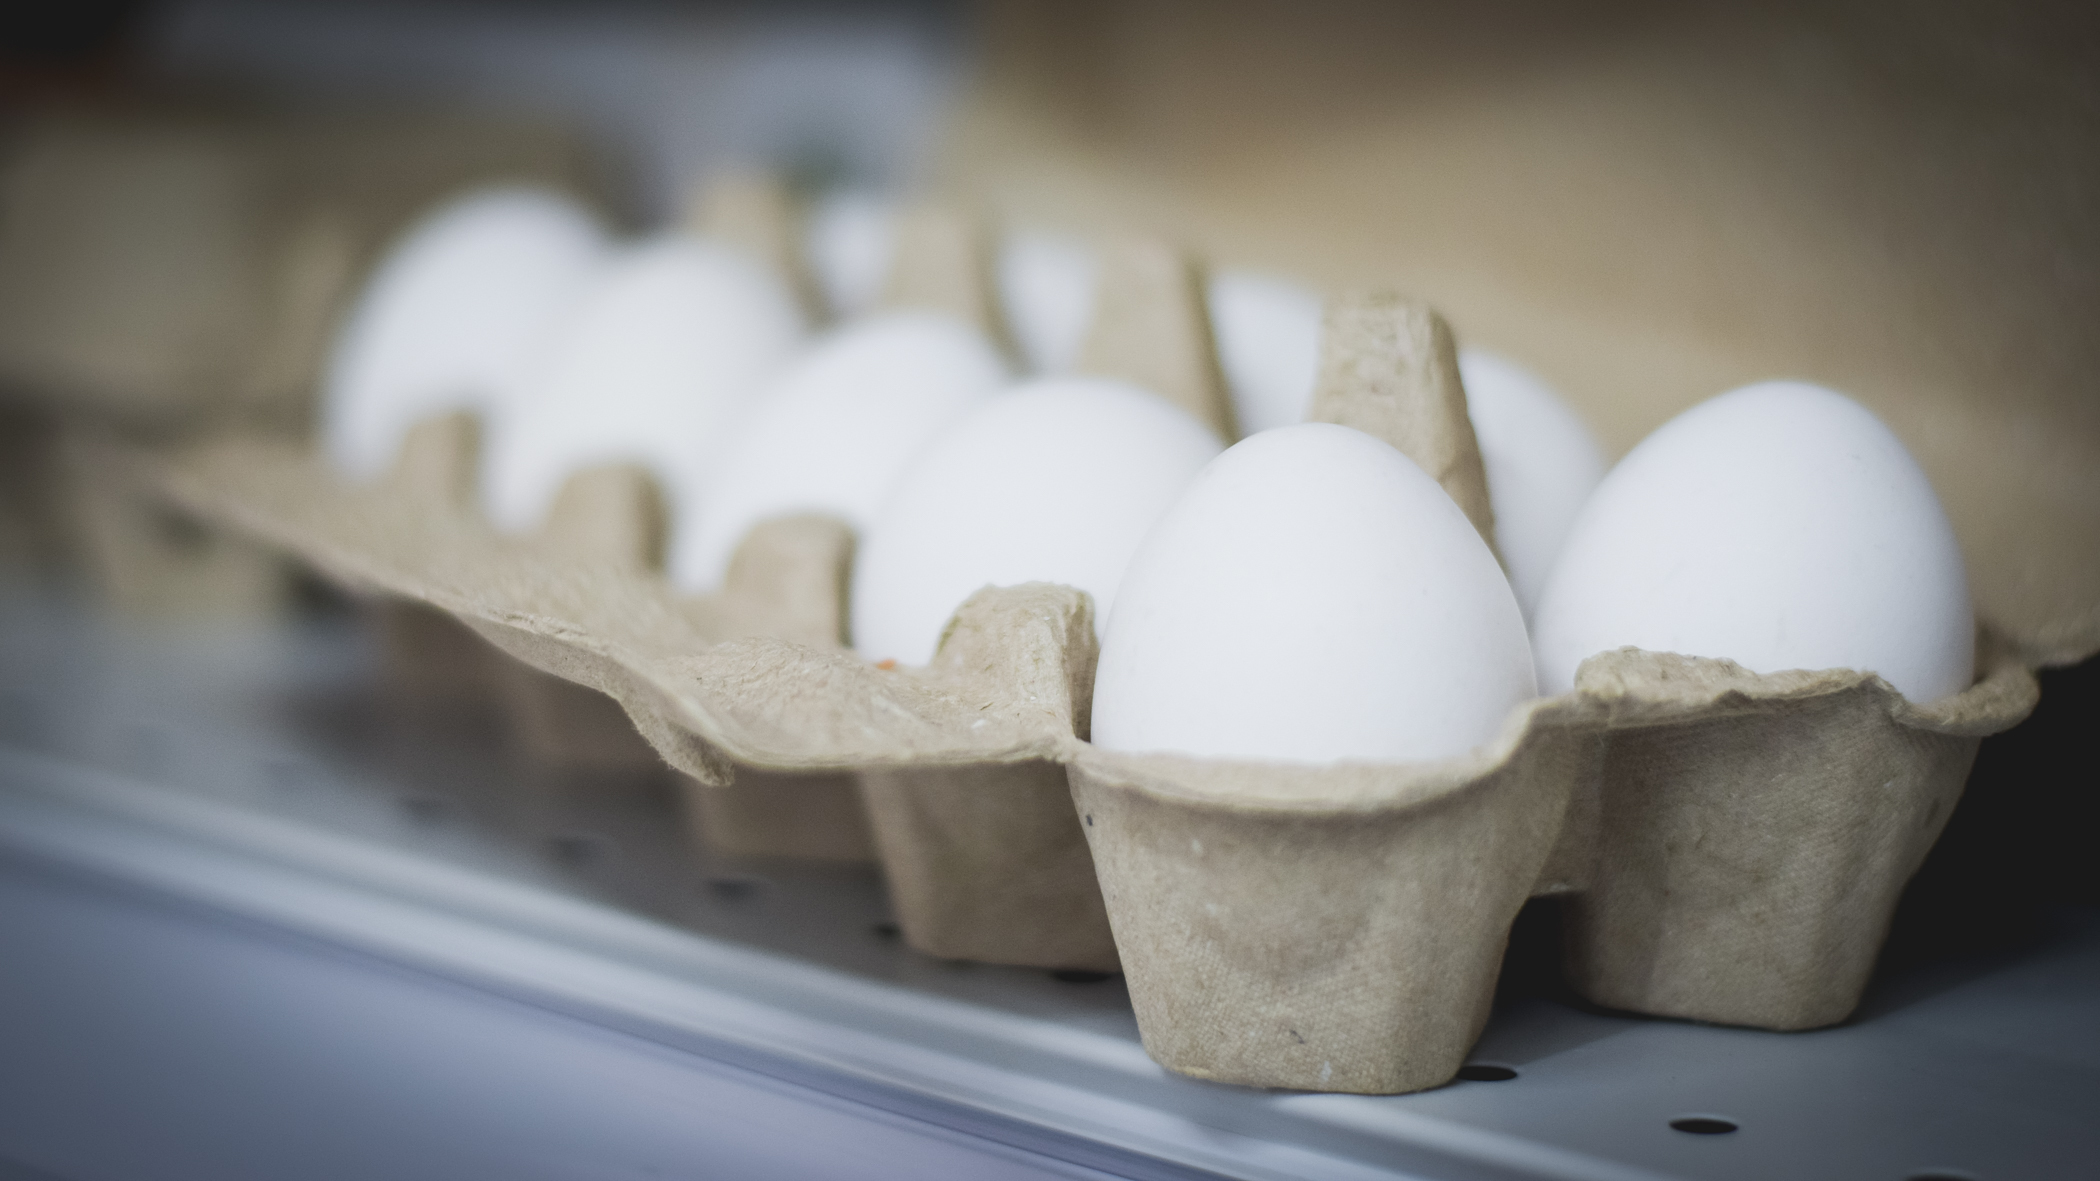 Птицефабрика «Боровская» начала работу: в планах производство более 200 млн яиц